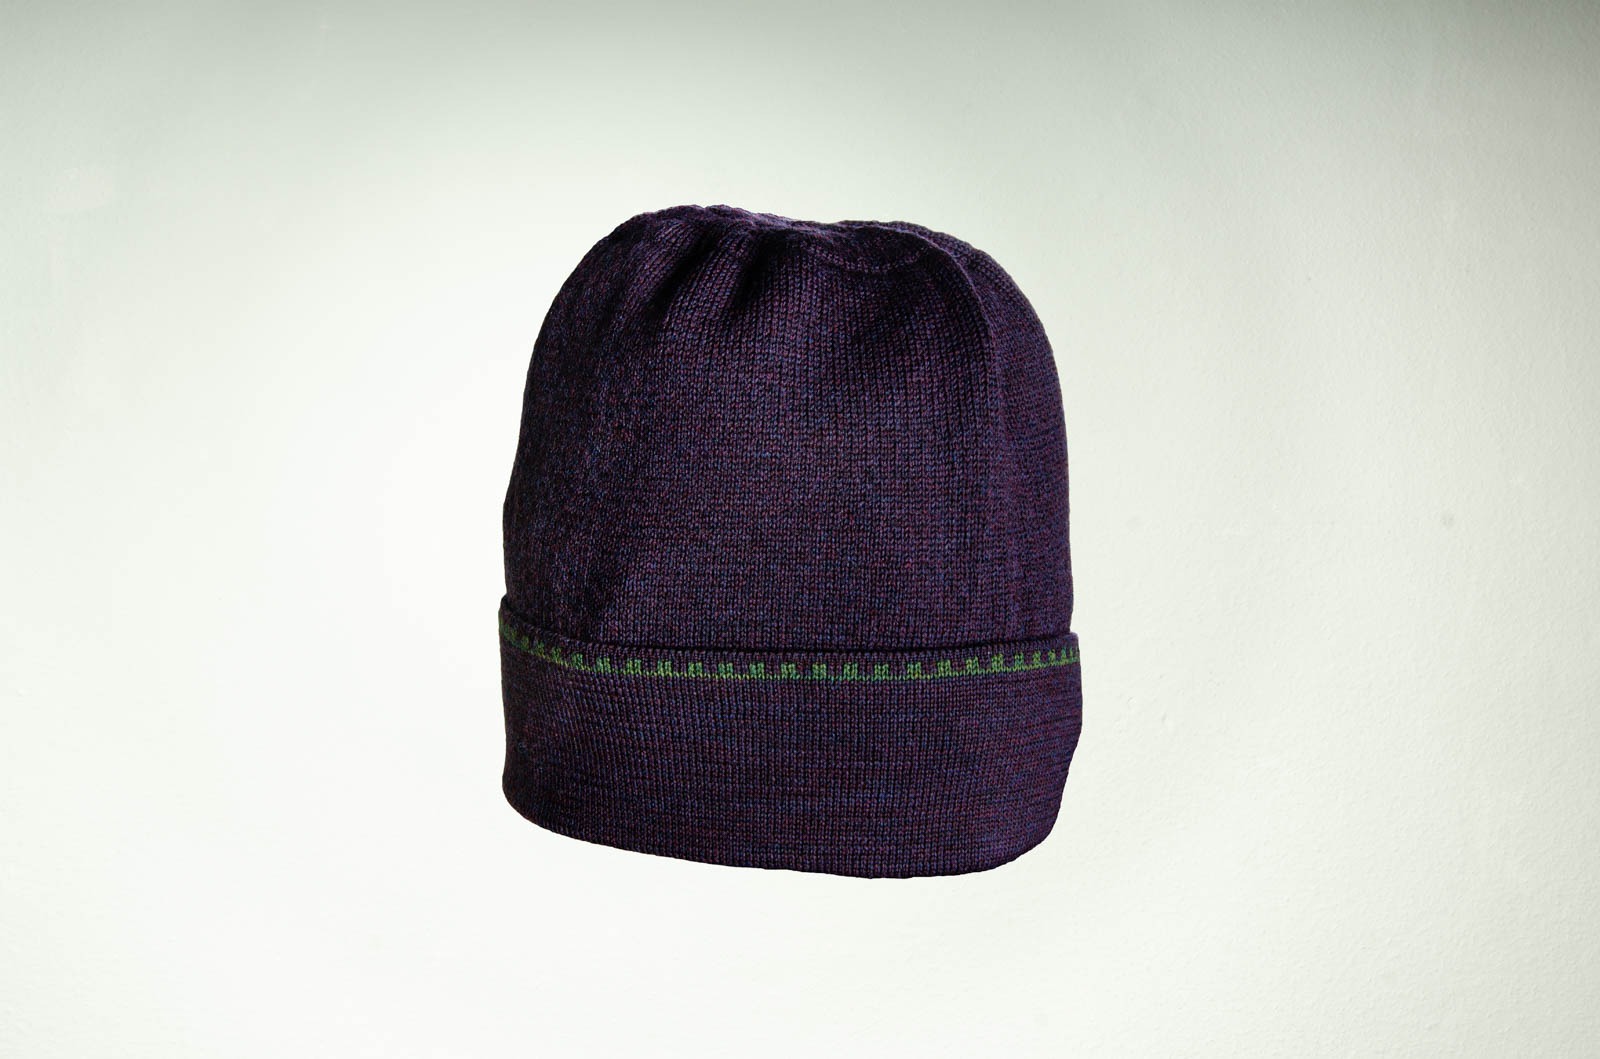 Merino Mütze in lila und dunkelgrün 2